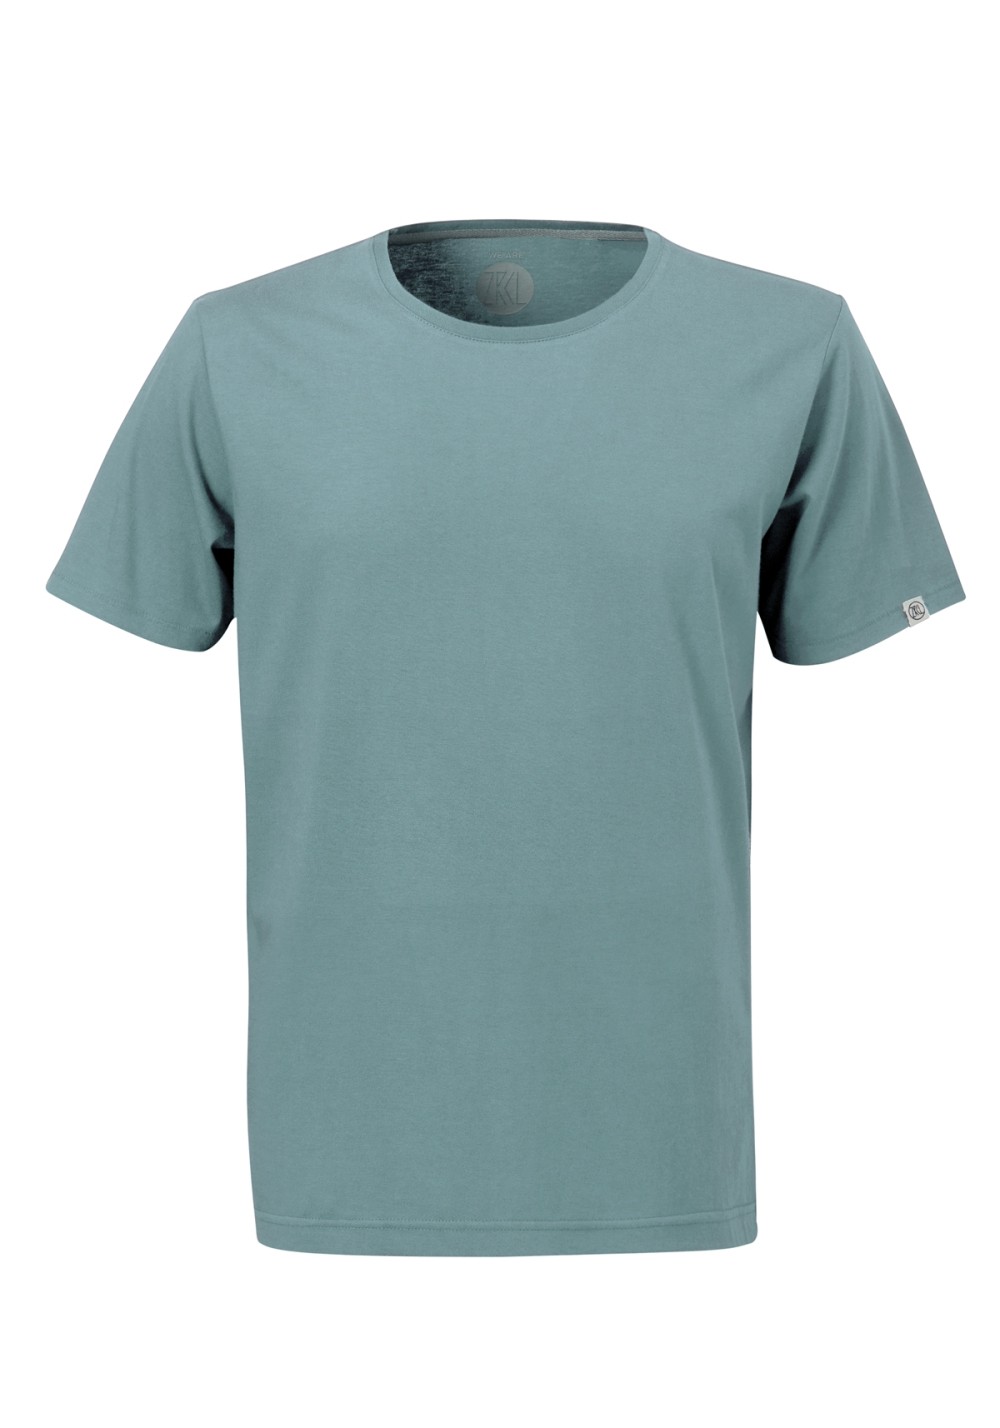 Herren-T-Shirt Basic Steel Blue